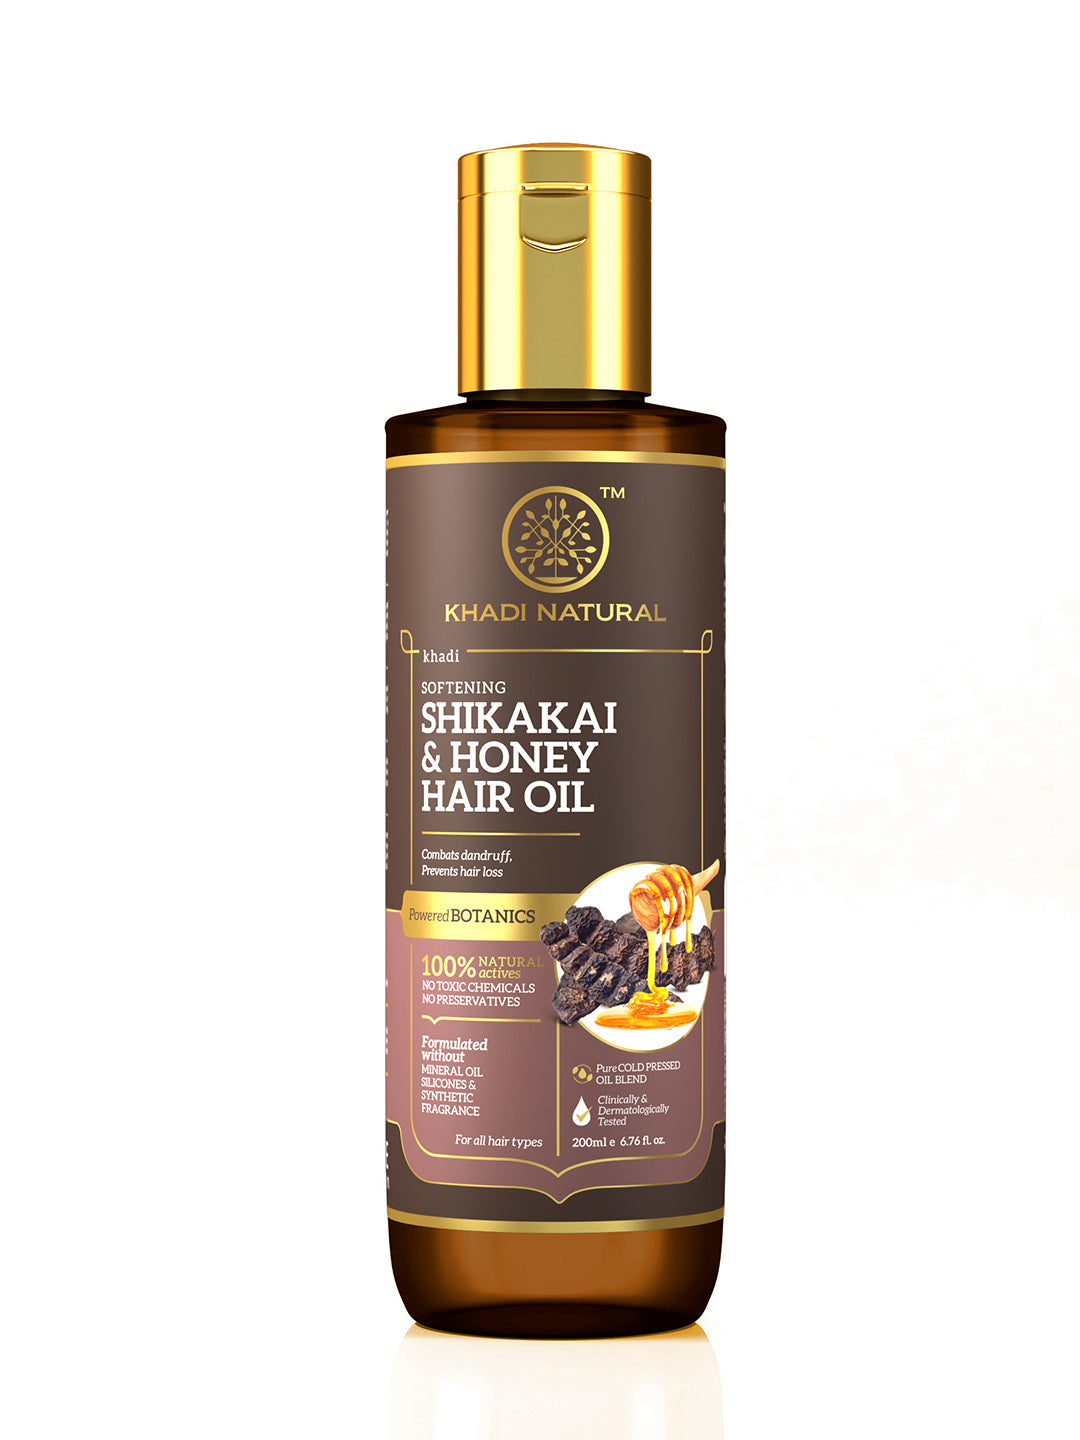 Khadi Natural Shikakai & Honey Hair Oil-Powered Botanics-200m